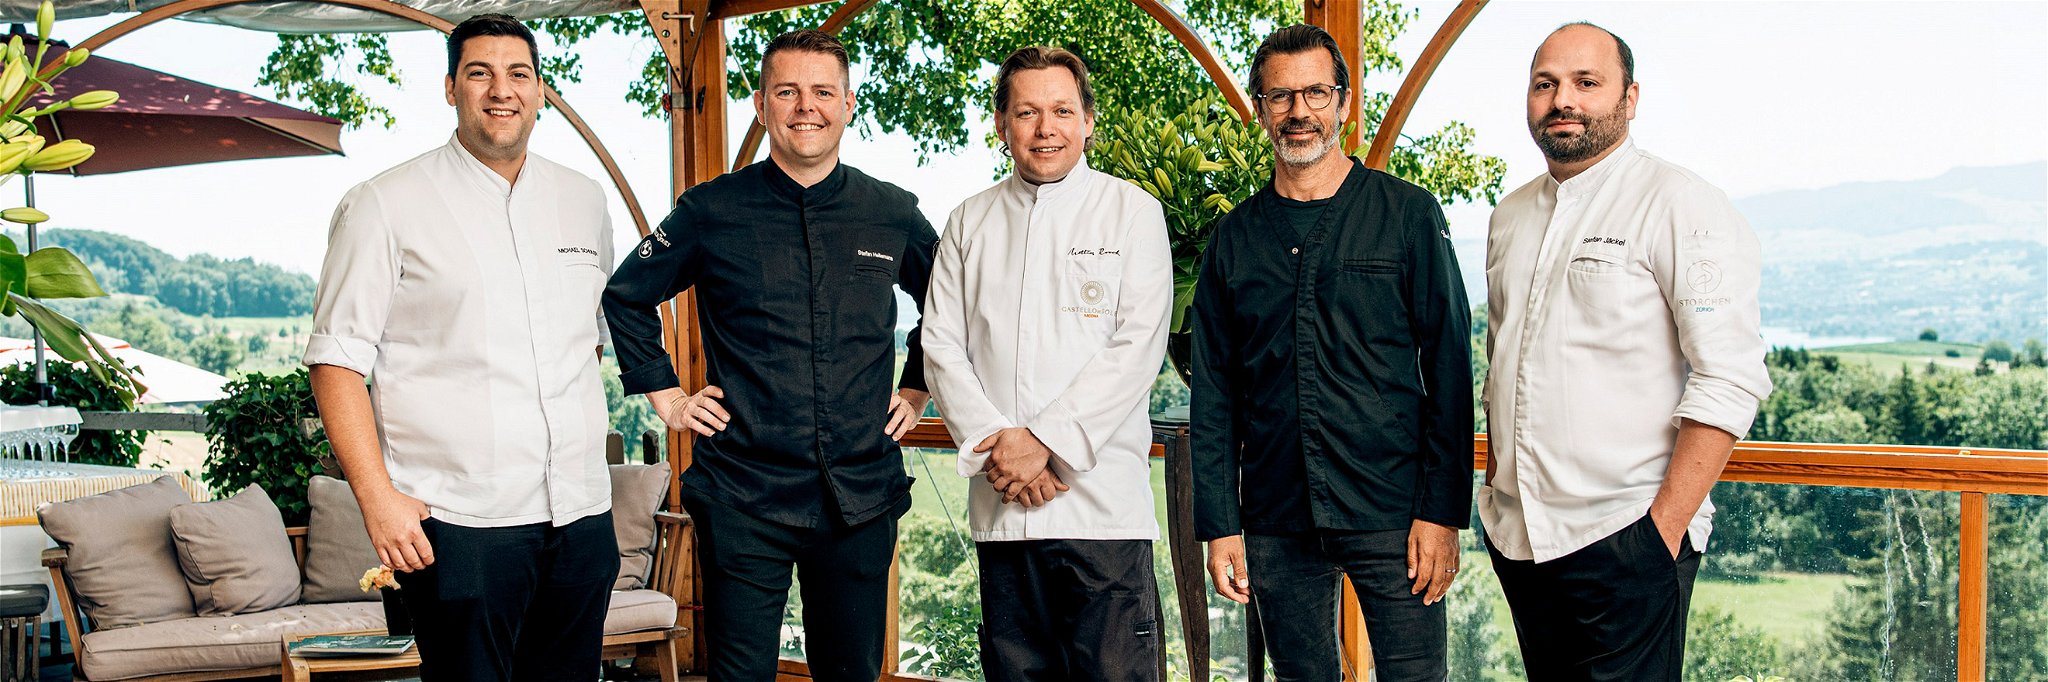 Die vier The Living Circle-Chefs Michael Schuler, Stefan Heilemann, Mattias Roock und Stefan Jäckel mit Andreas Caminada (2.v.r.).